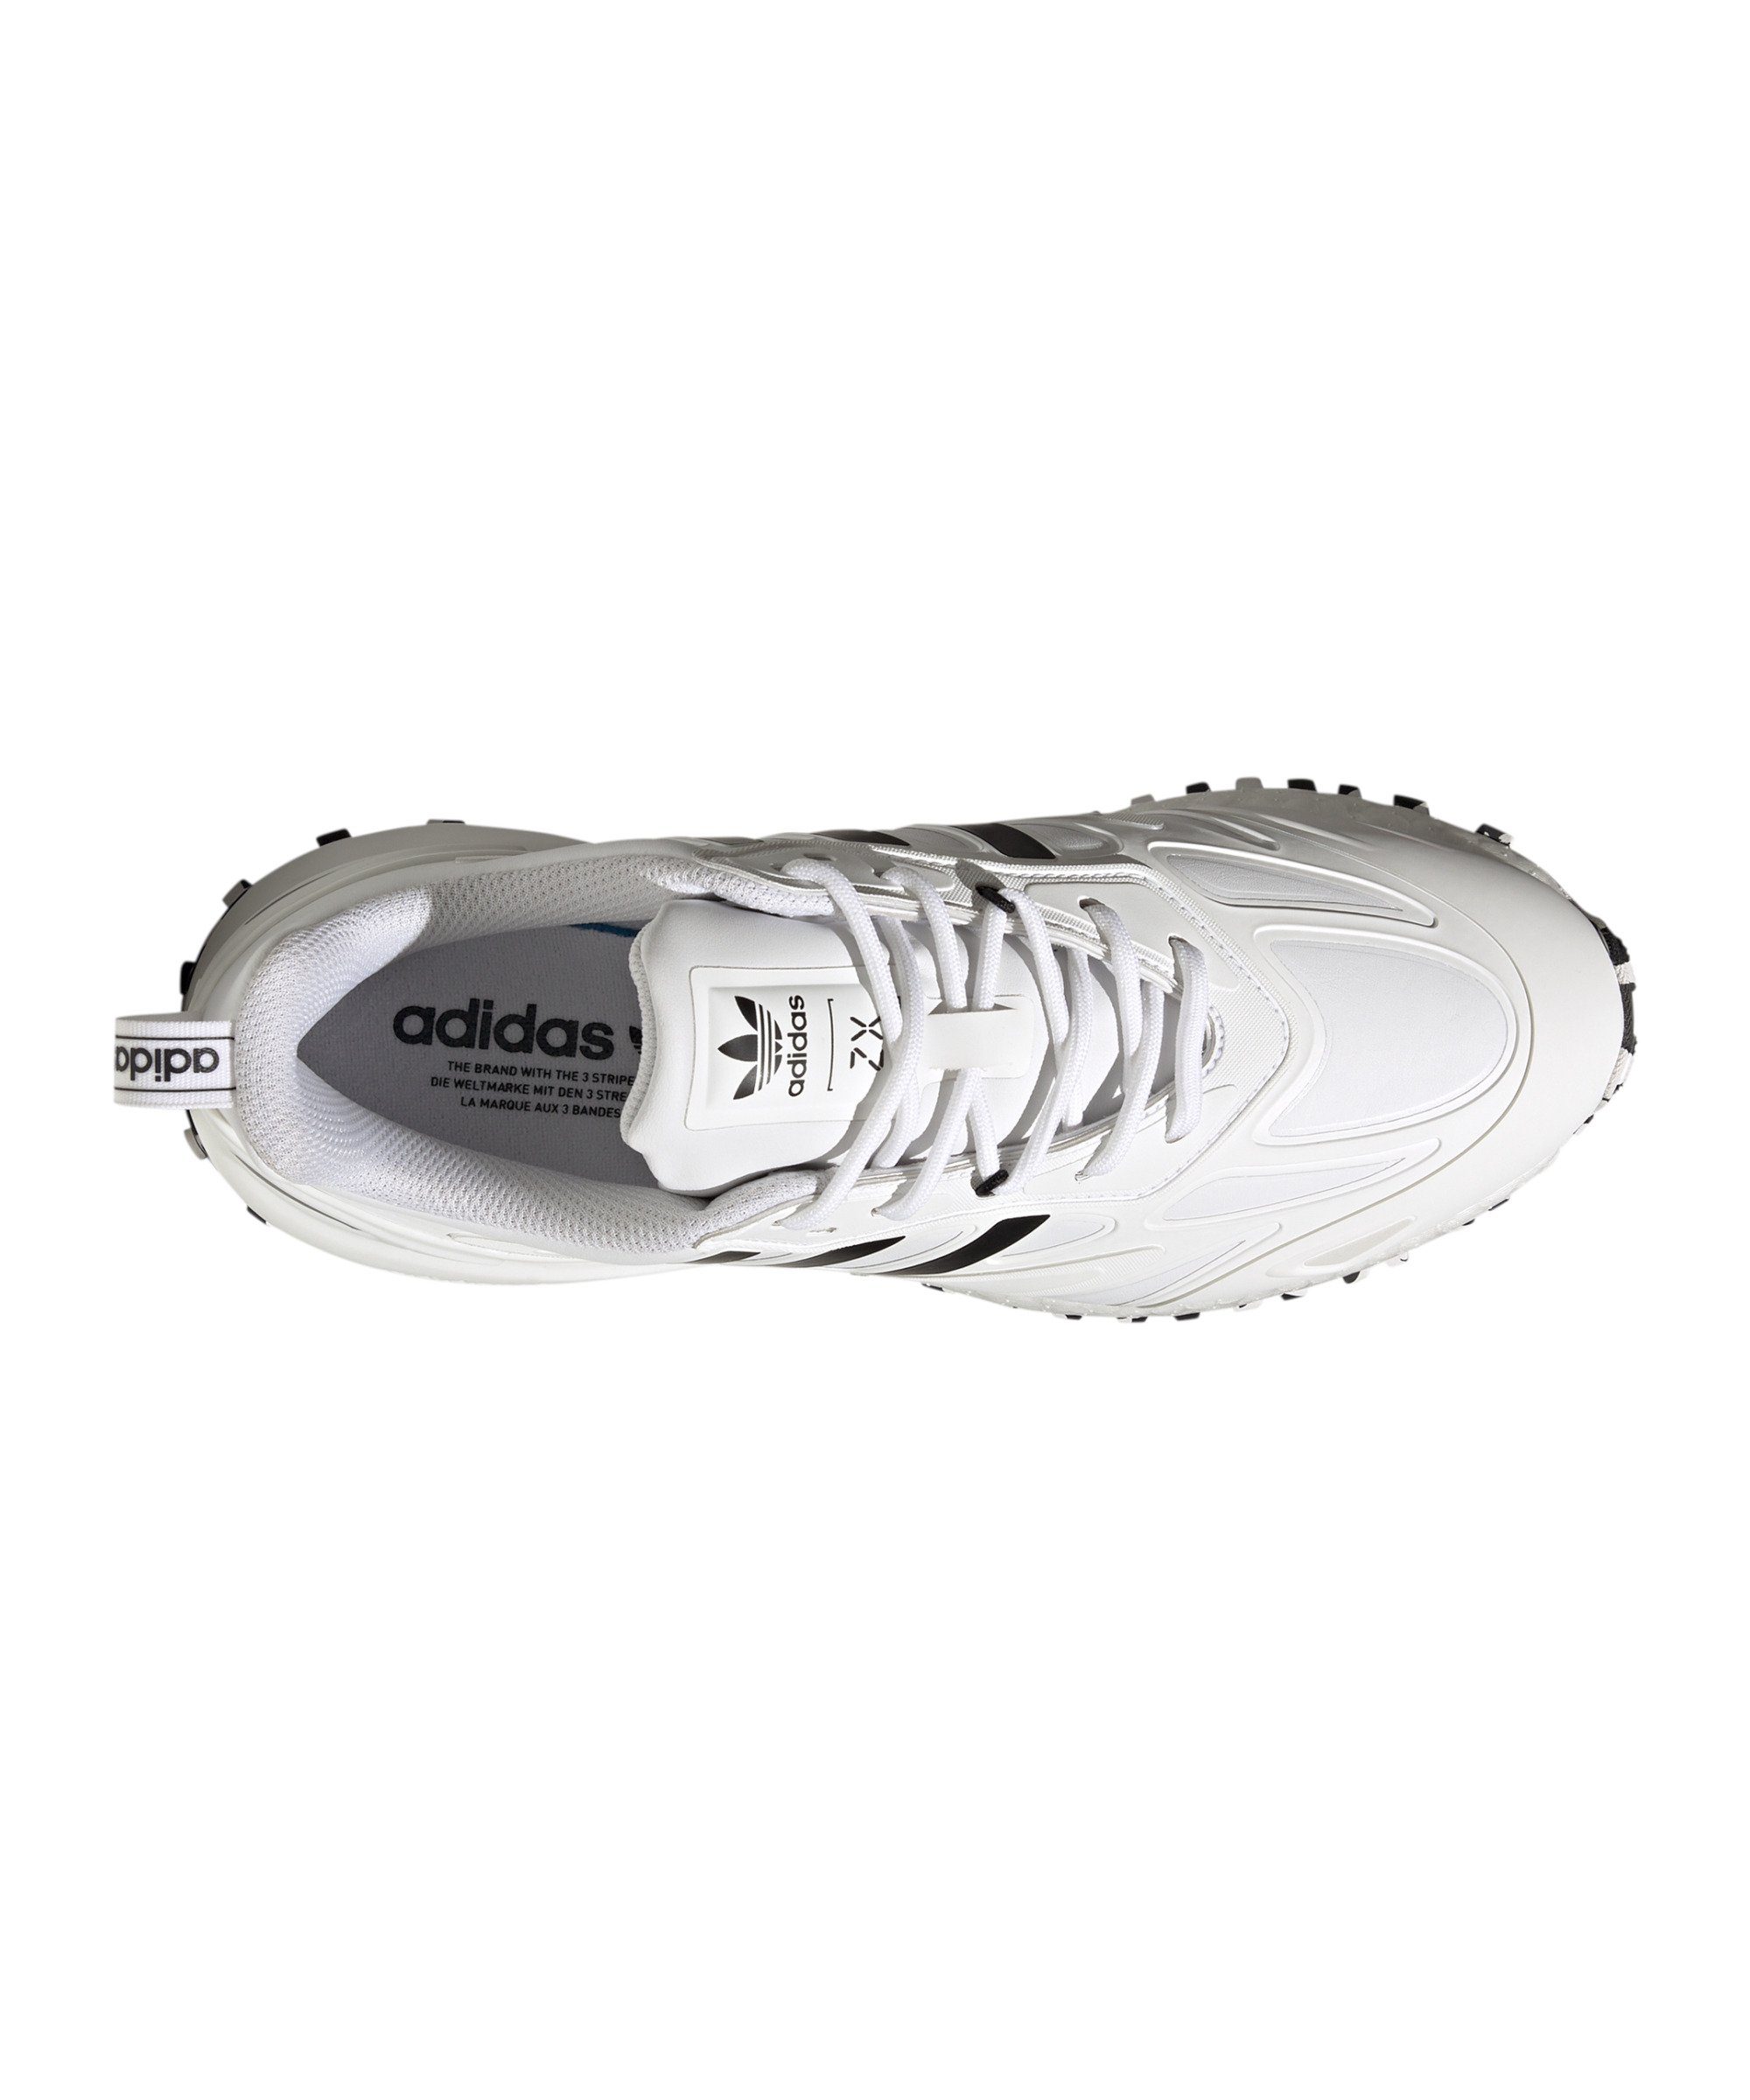 Originals Boost Sneaker 2K weiss Trail ZX adidas 2.0